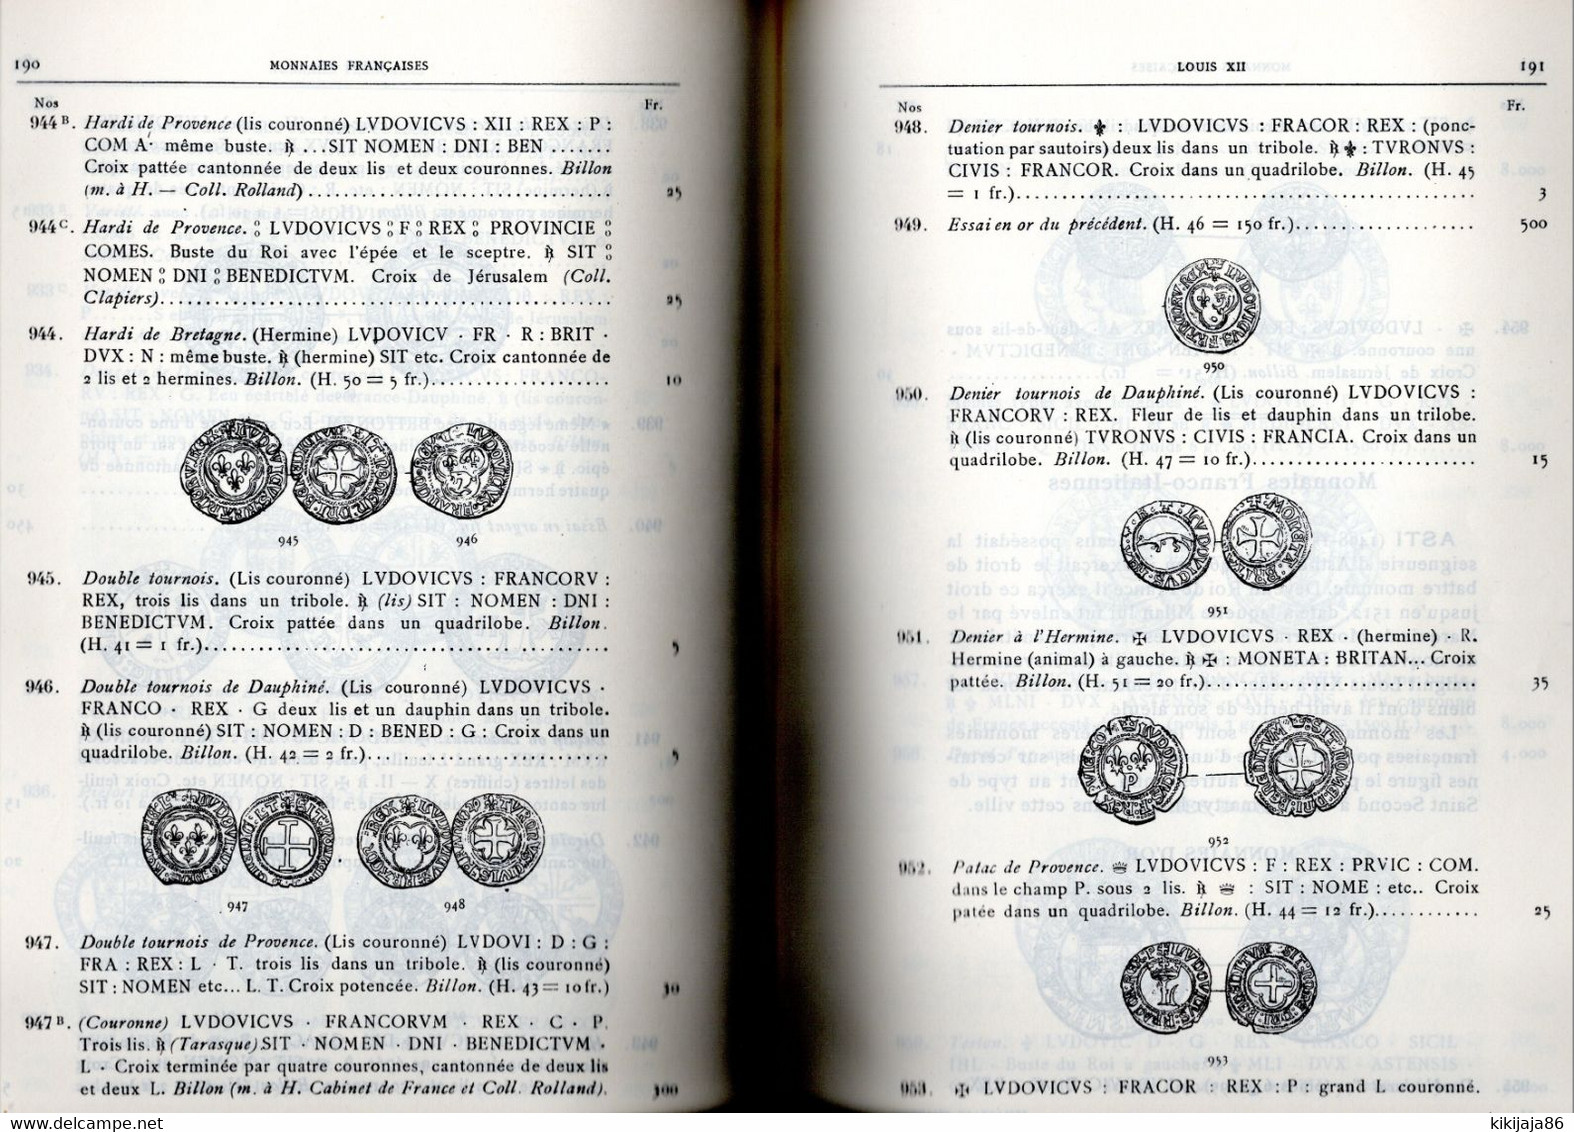 Livre Des Monnaies Royales Françaises LOUIS CIANI 1926 - Livres & Logiciels